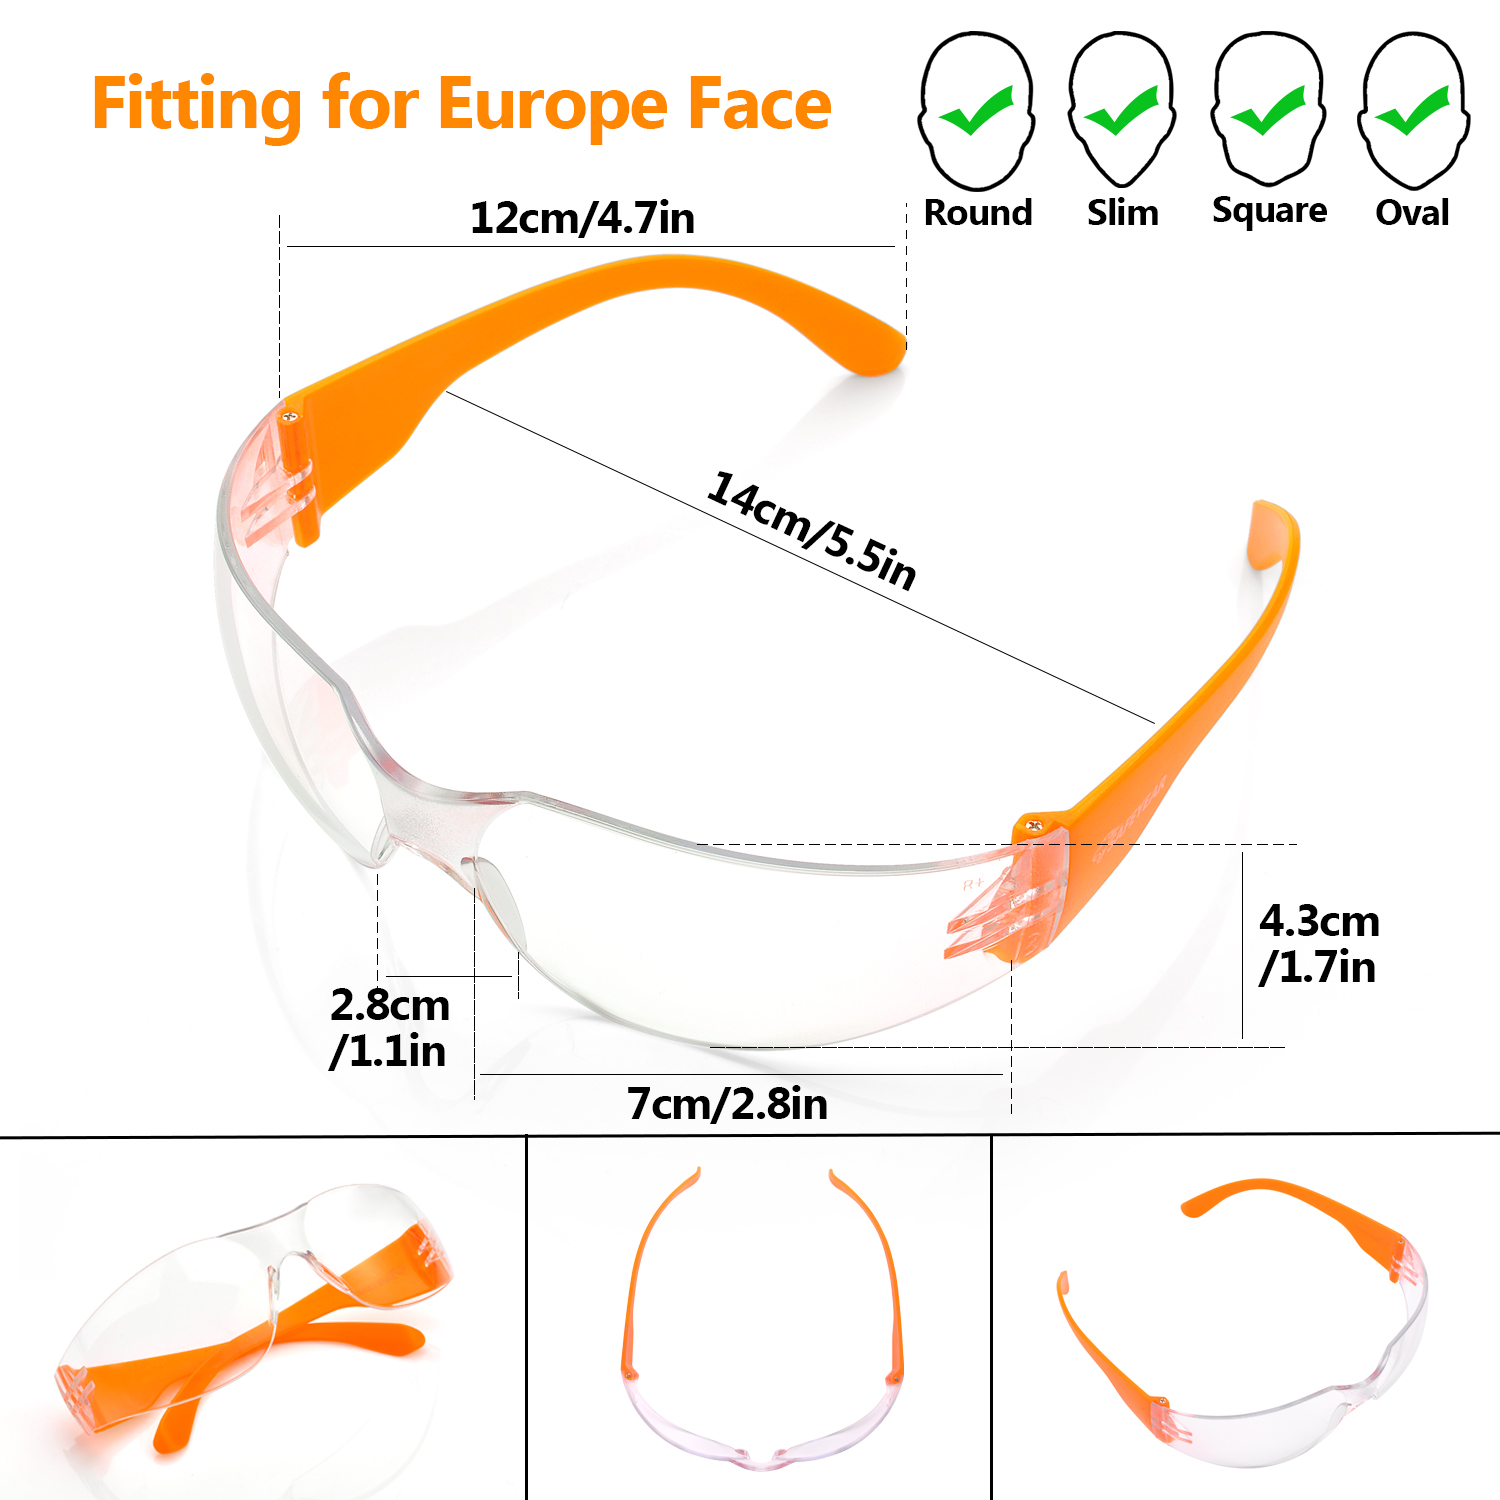 Lunettes de protection des yeux SG001 Orange